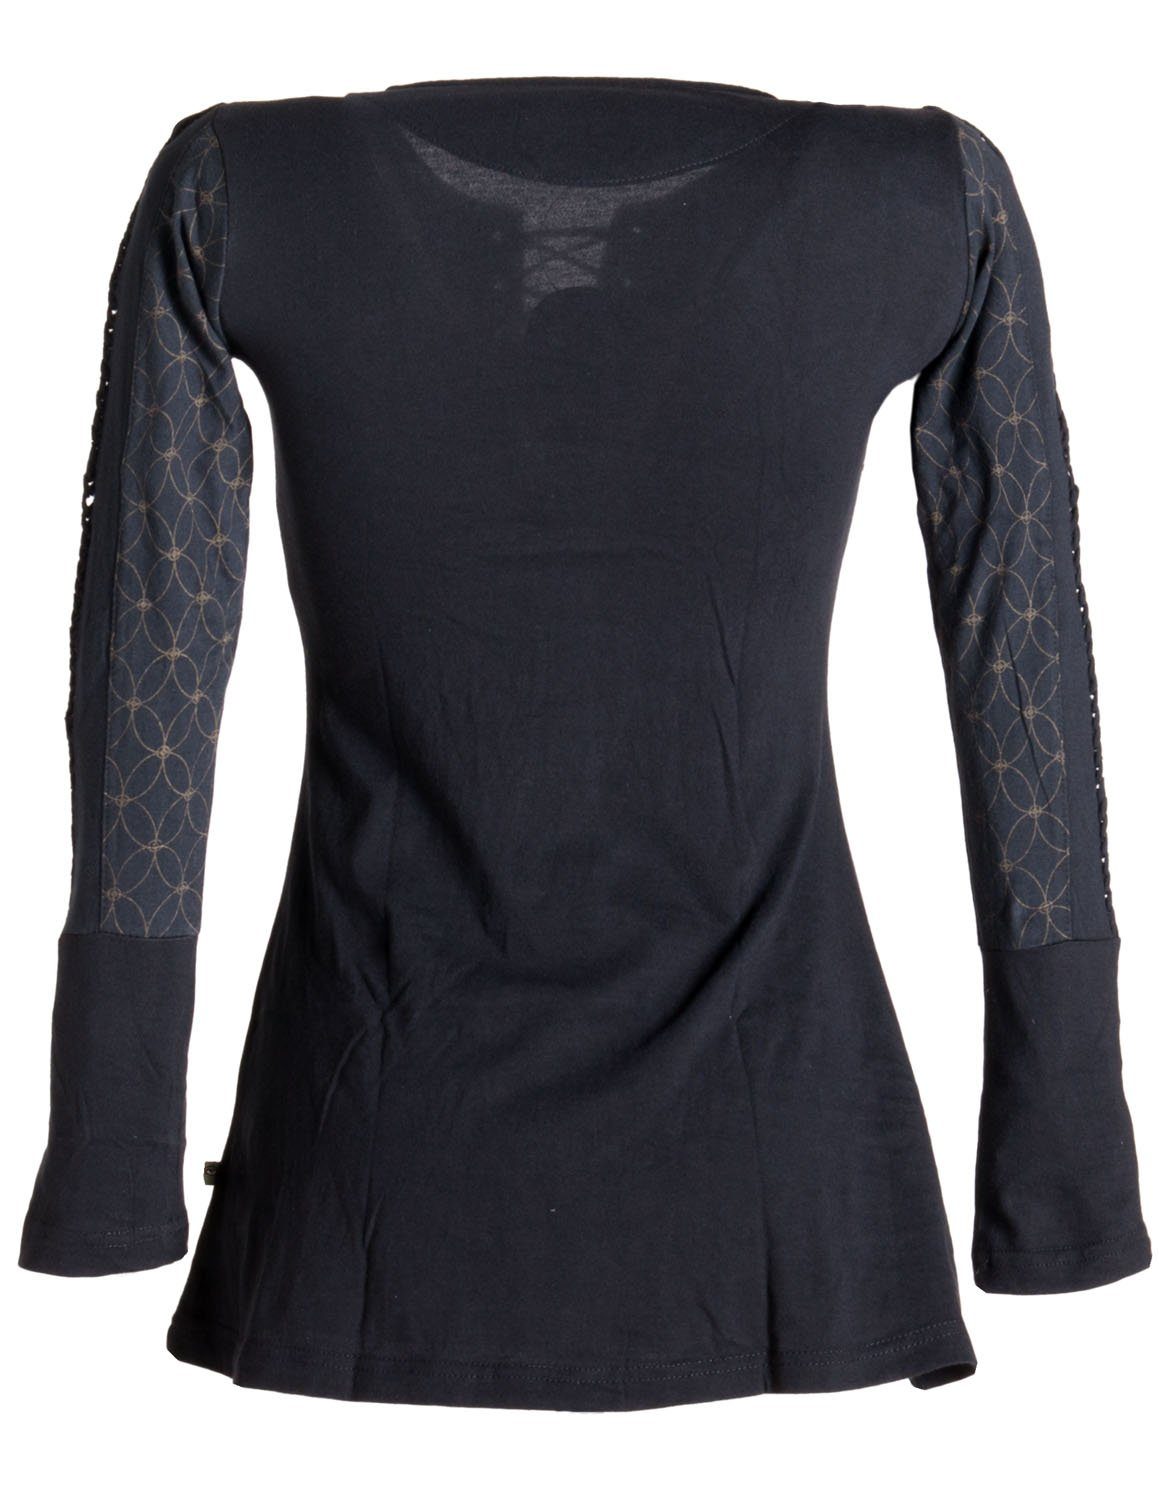 Vishes Sweater Bedrucktes Longshirt Style Ethno, Hippie, Baumwolle Kängurutasche Boho, Goa schwarz mit